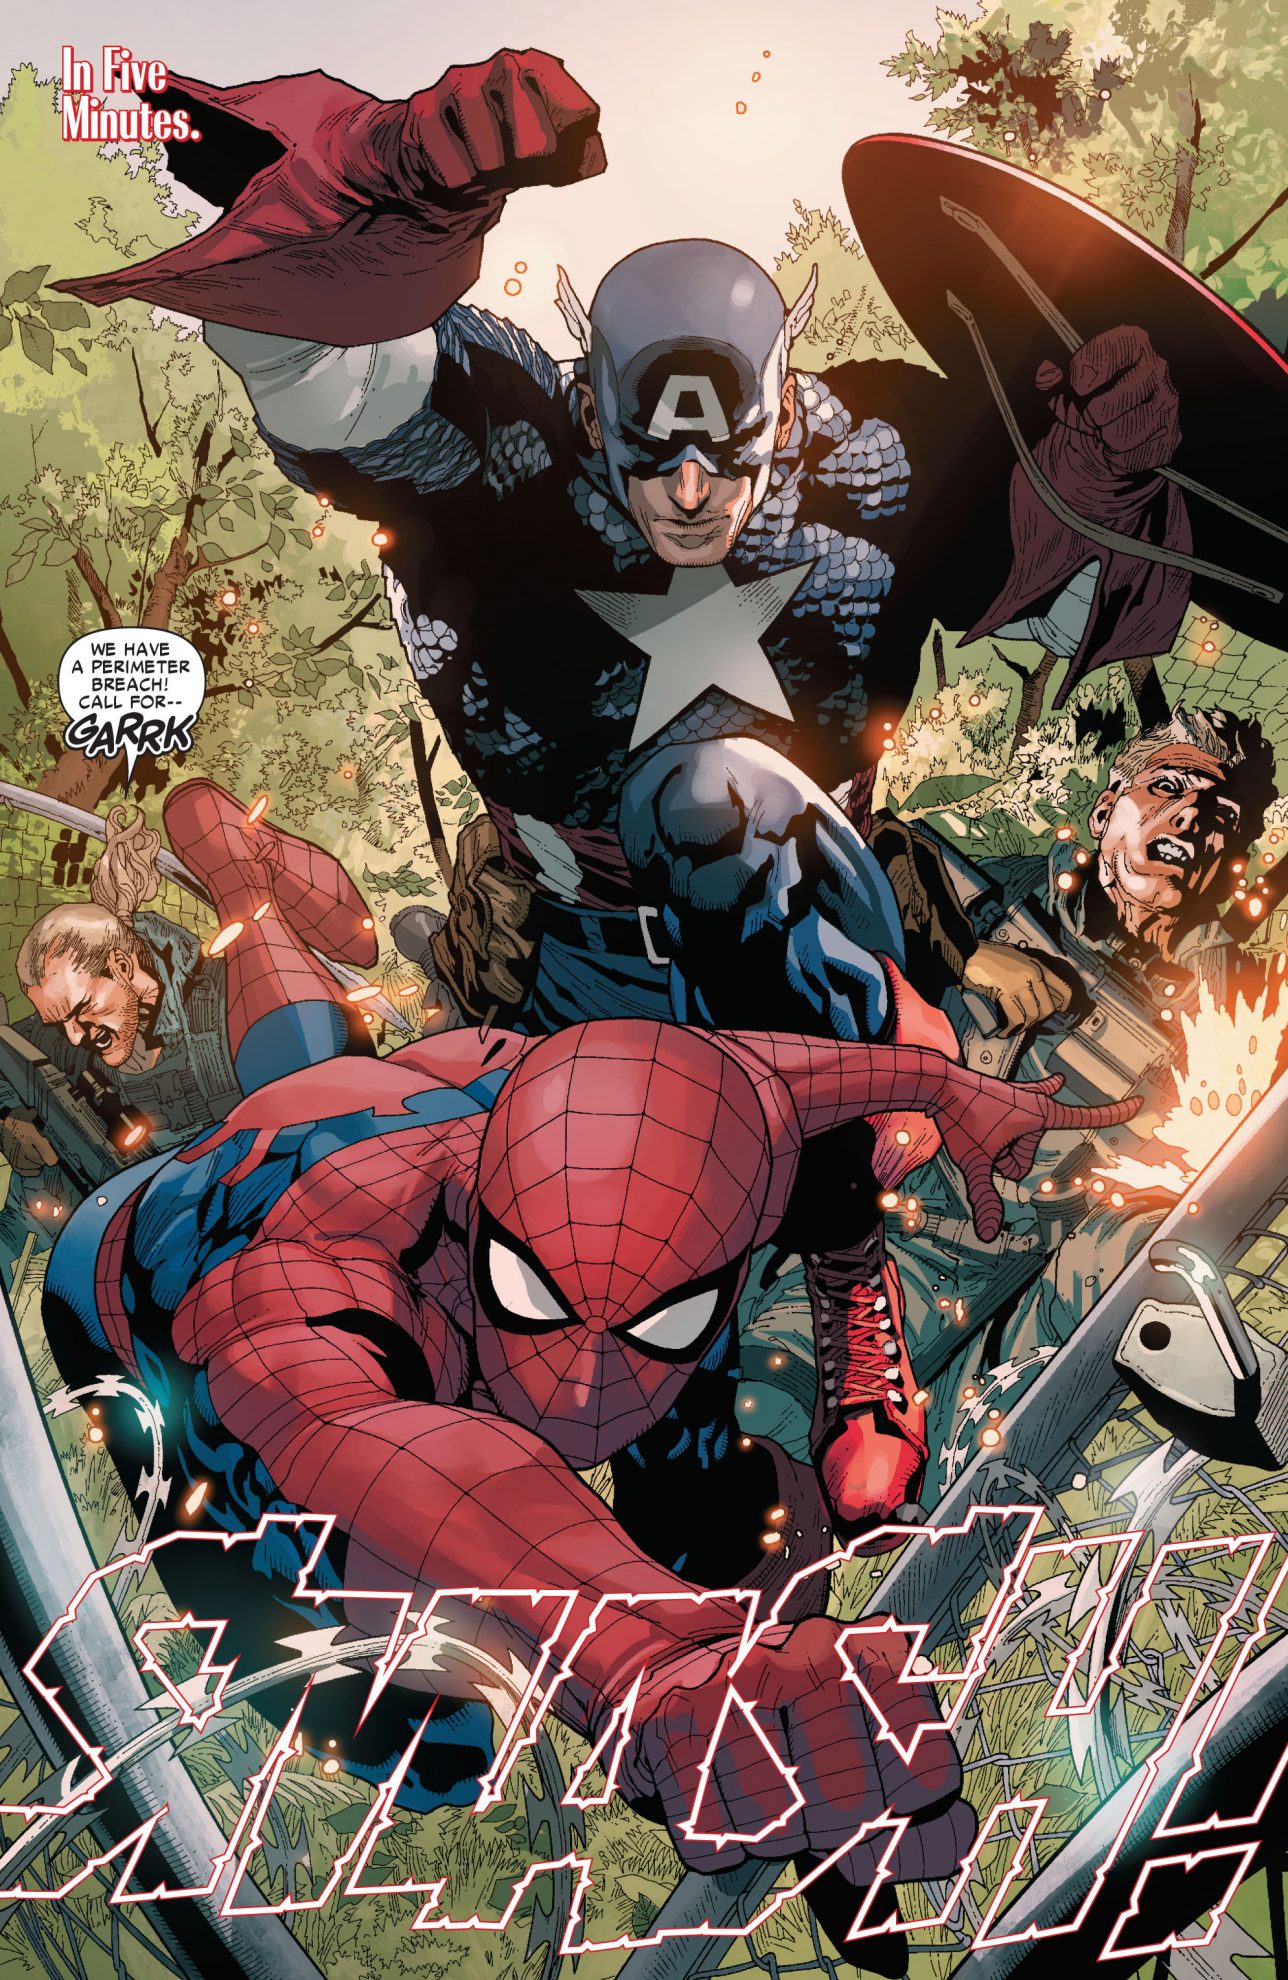 Spider-Man And Captain America VS Copperhead